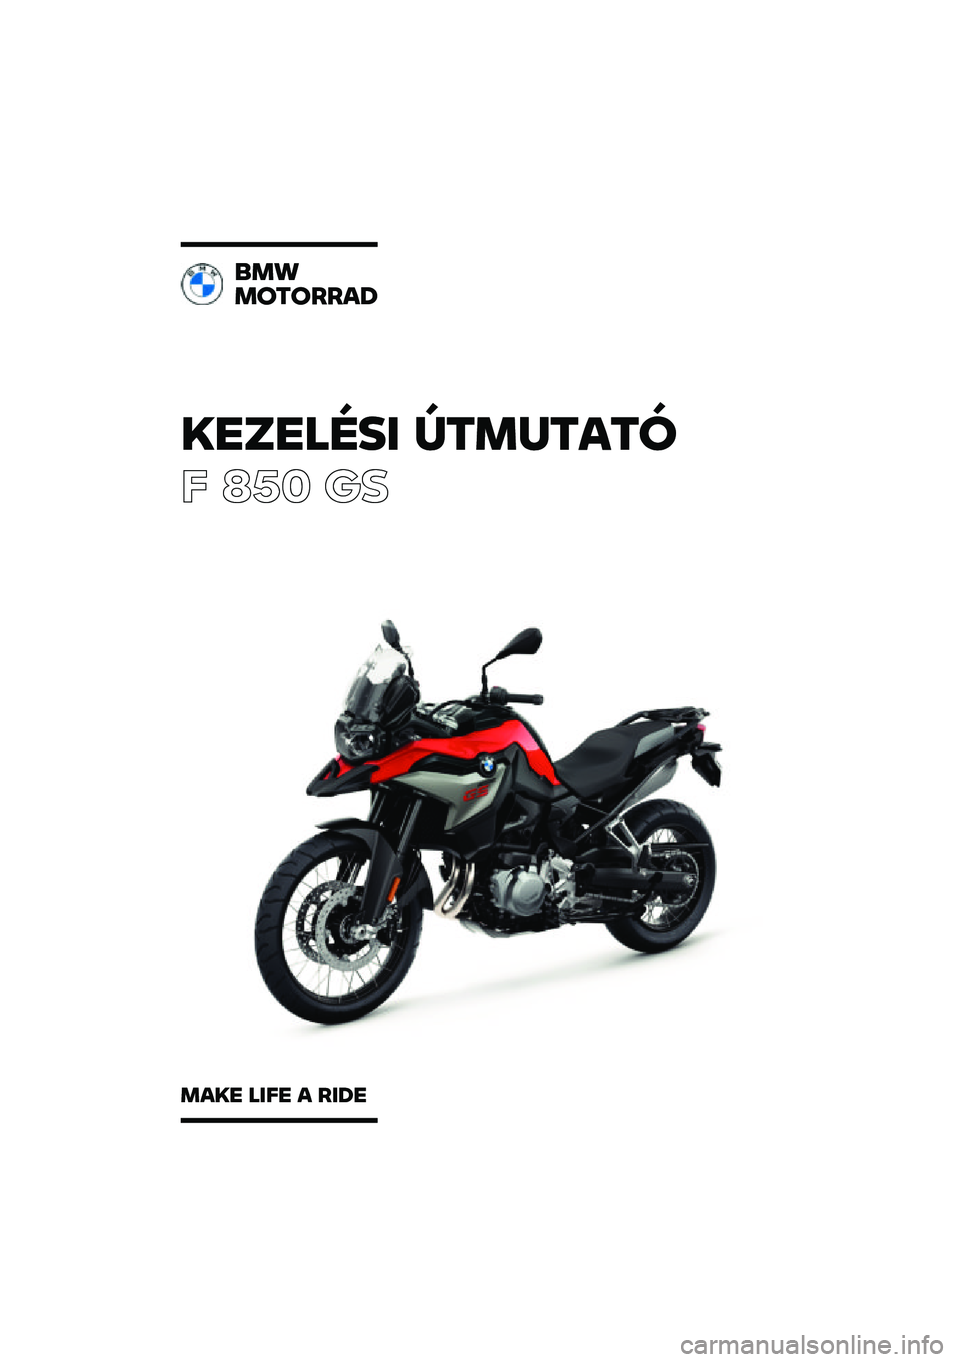 BMW MOTORRAD F 850 GS 2021  Kezelési útmutató (in Hungarian) �������\b�	 �
�\f�
��\f��\f�
� ��� �	�

��
�
�
��\f�����
�
��� ��	�� � ��	�� 